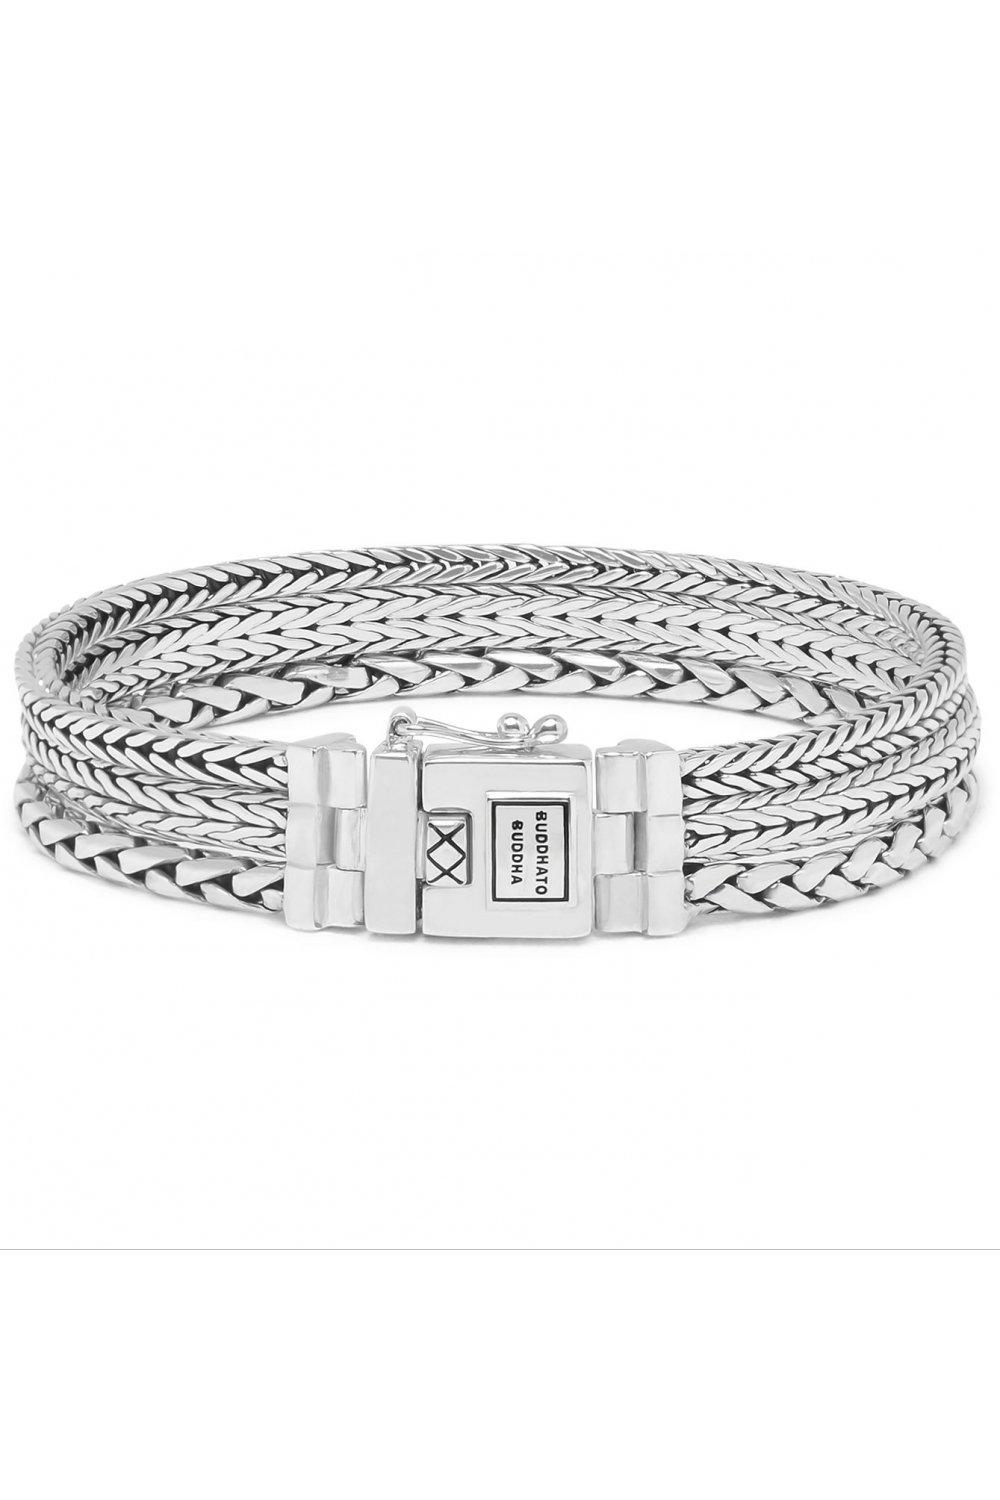 ellen sterling silver fashion bracelet - 001k011040106